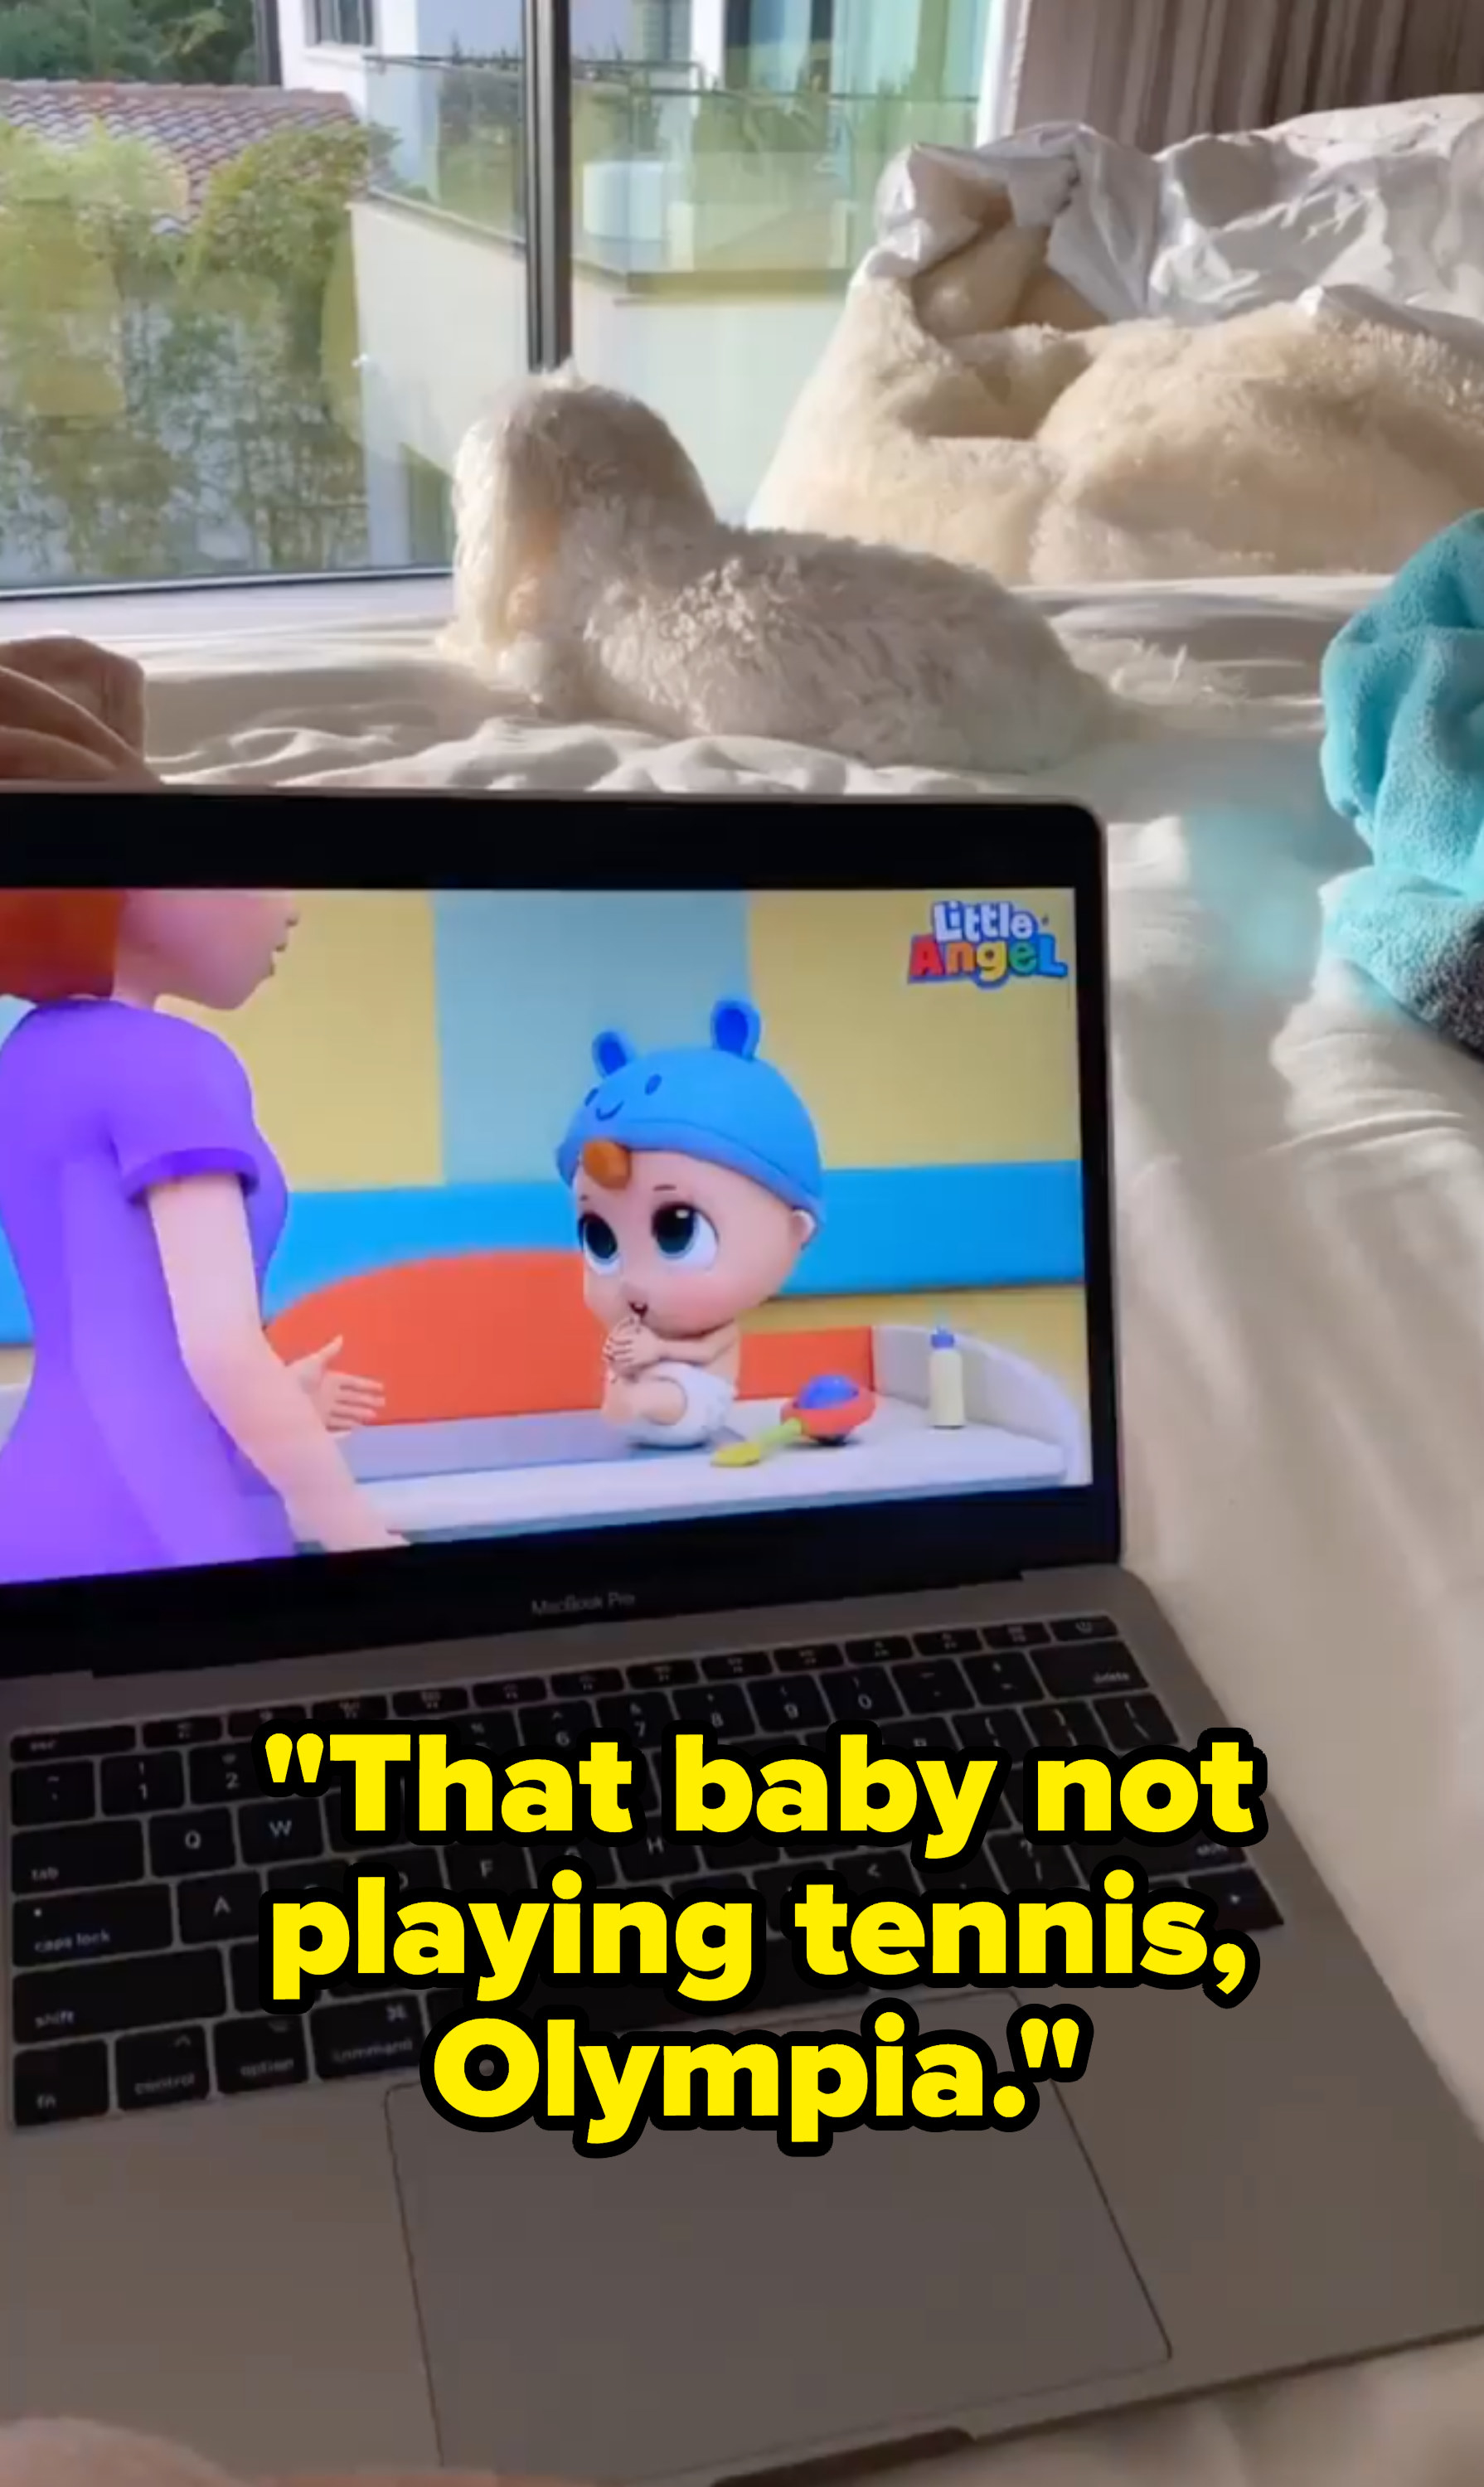 一张奥林匹亚看着小天使的照片，标题是“那个孩子不会打网球，奥林匹亚”;